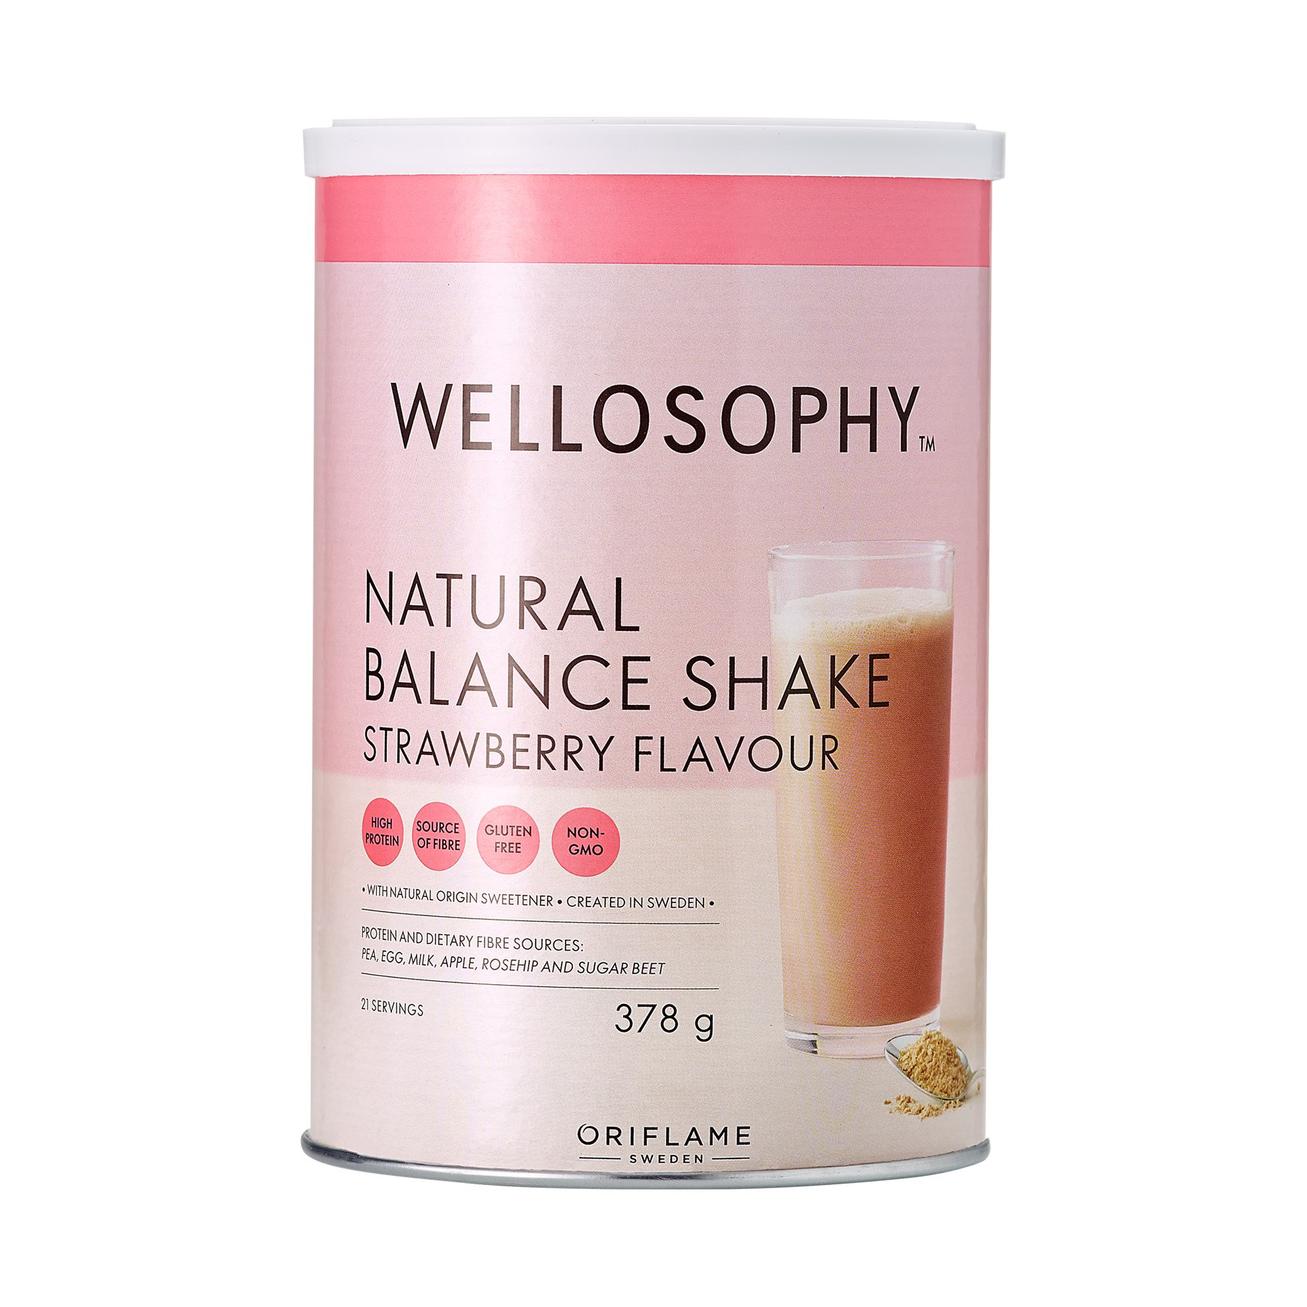 Aanbieding van Natural Balance Shake Strawberry Flavour voor 54€ bij Oriflame